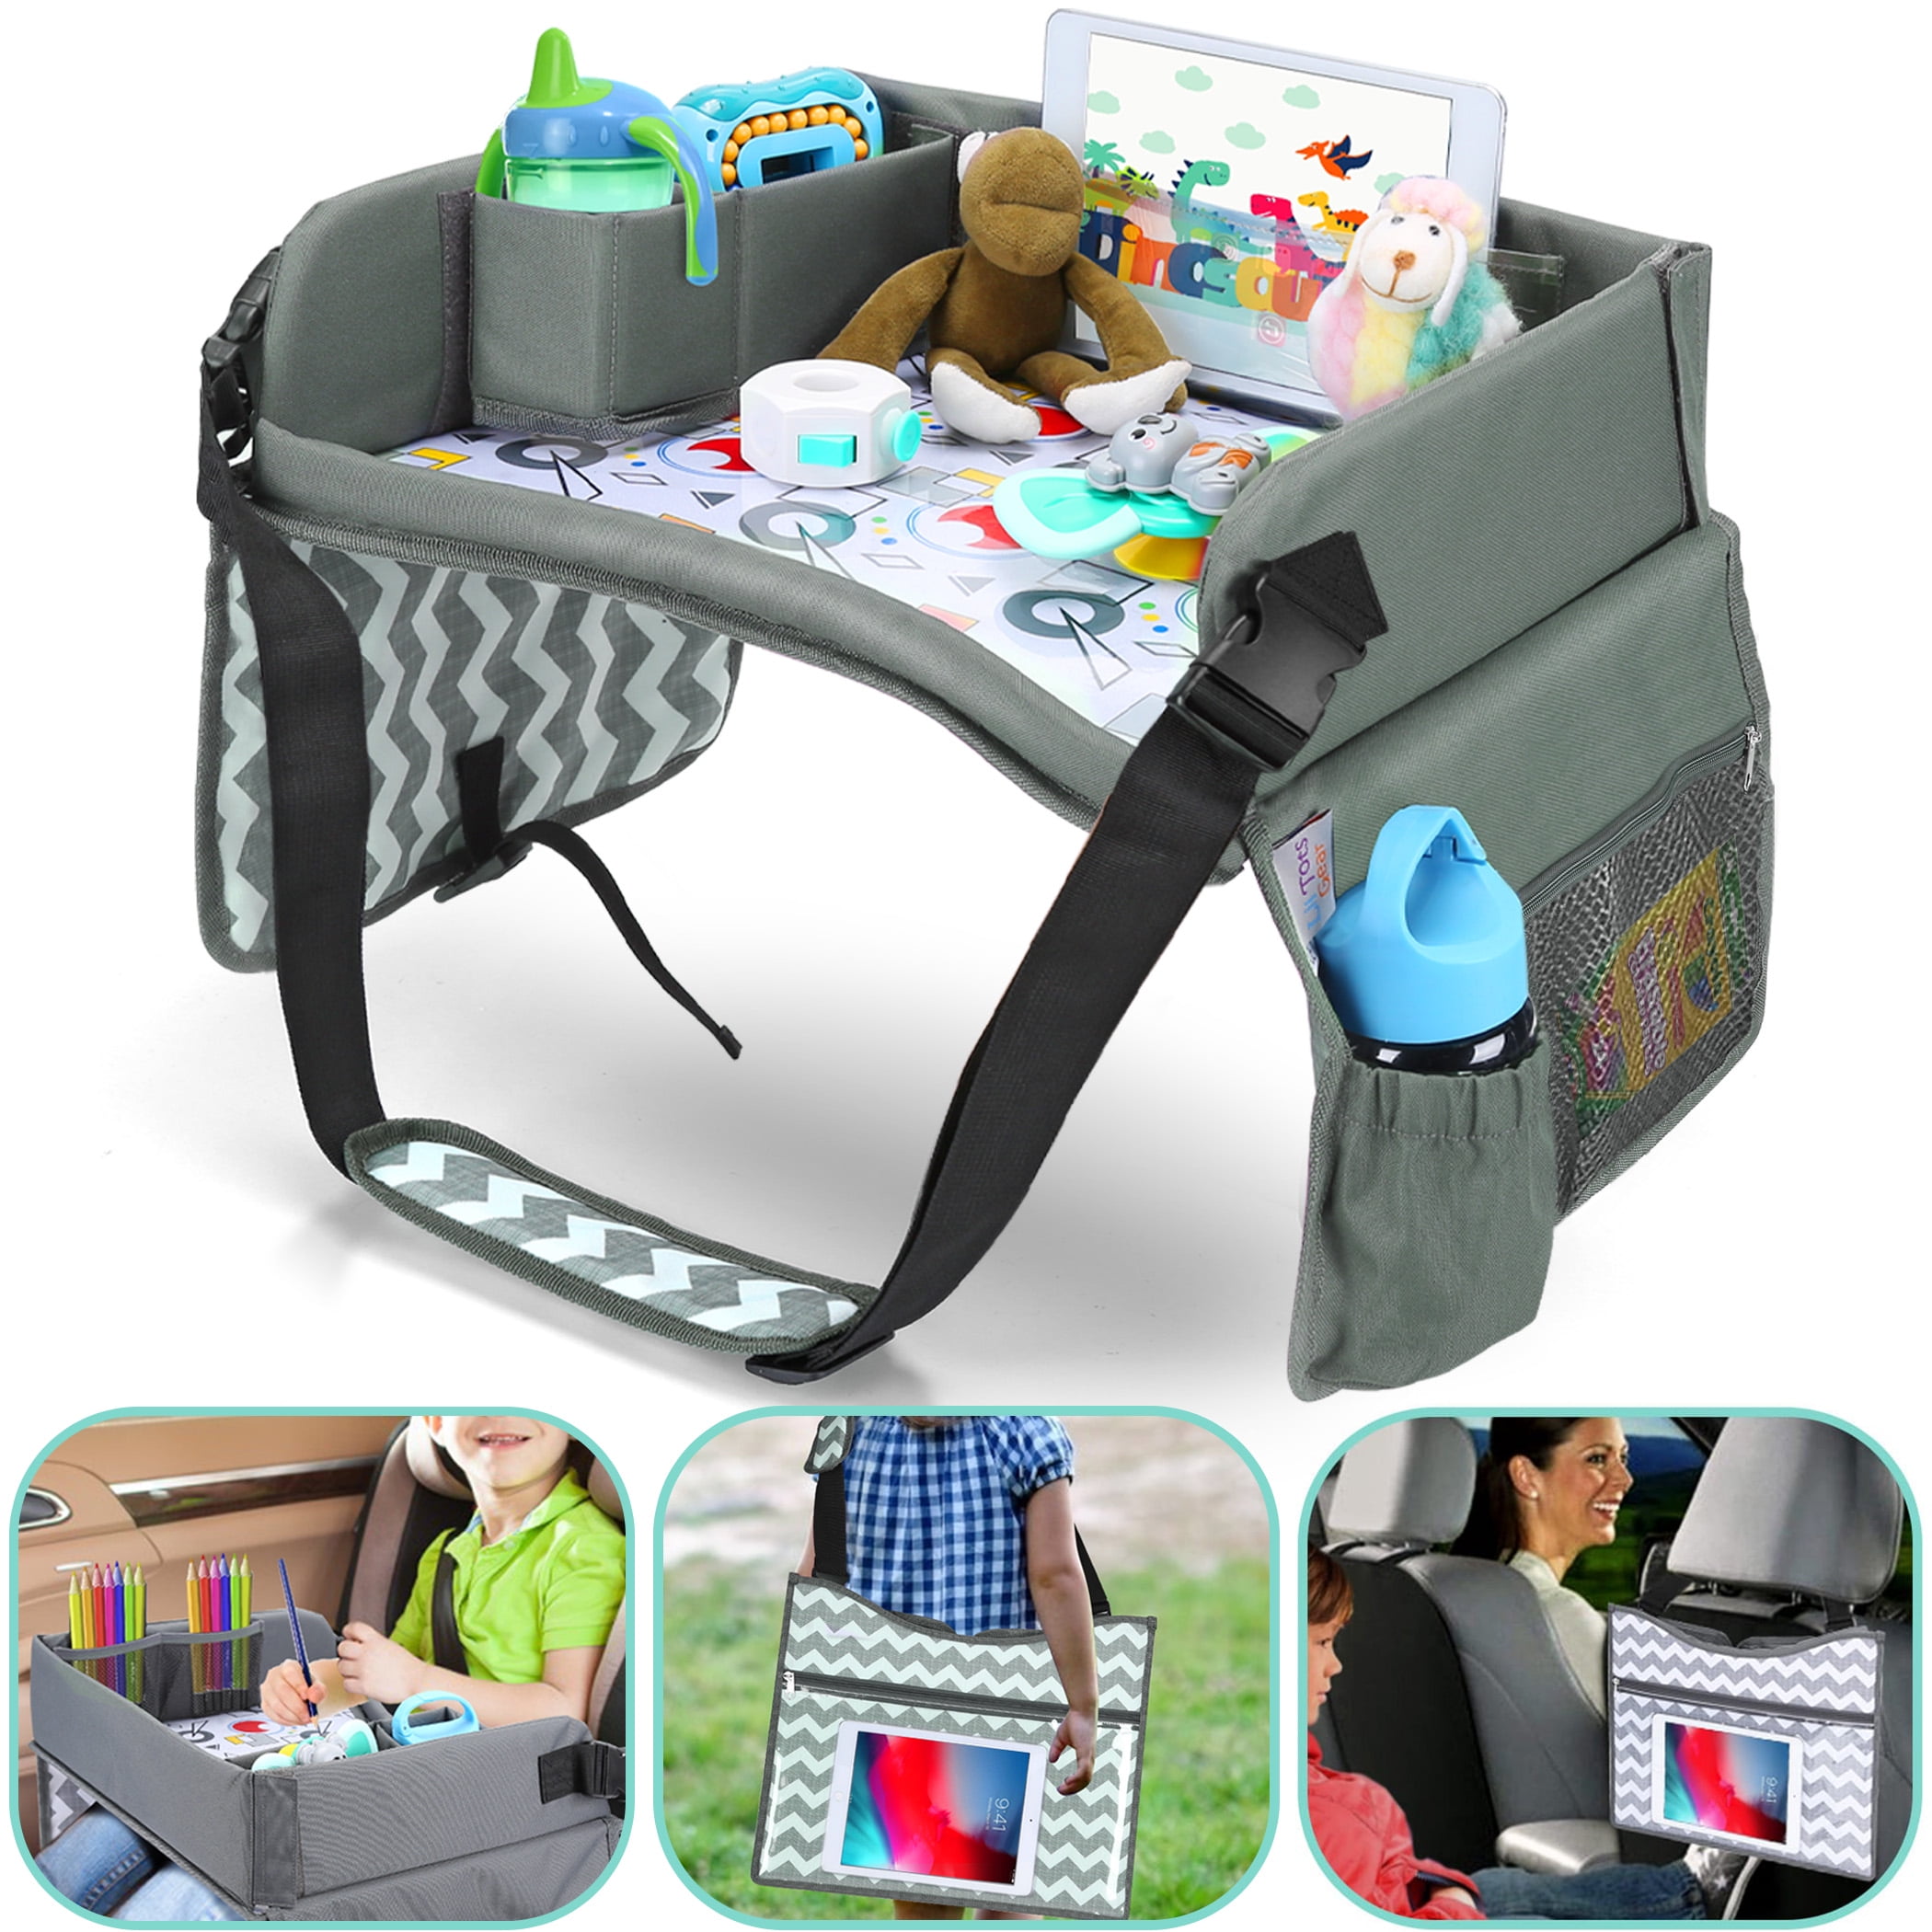  Kenley Kids Travel Tray, Toddler Car Seat Lap Tray